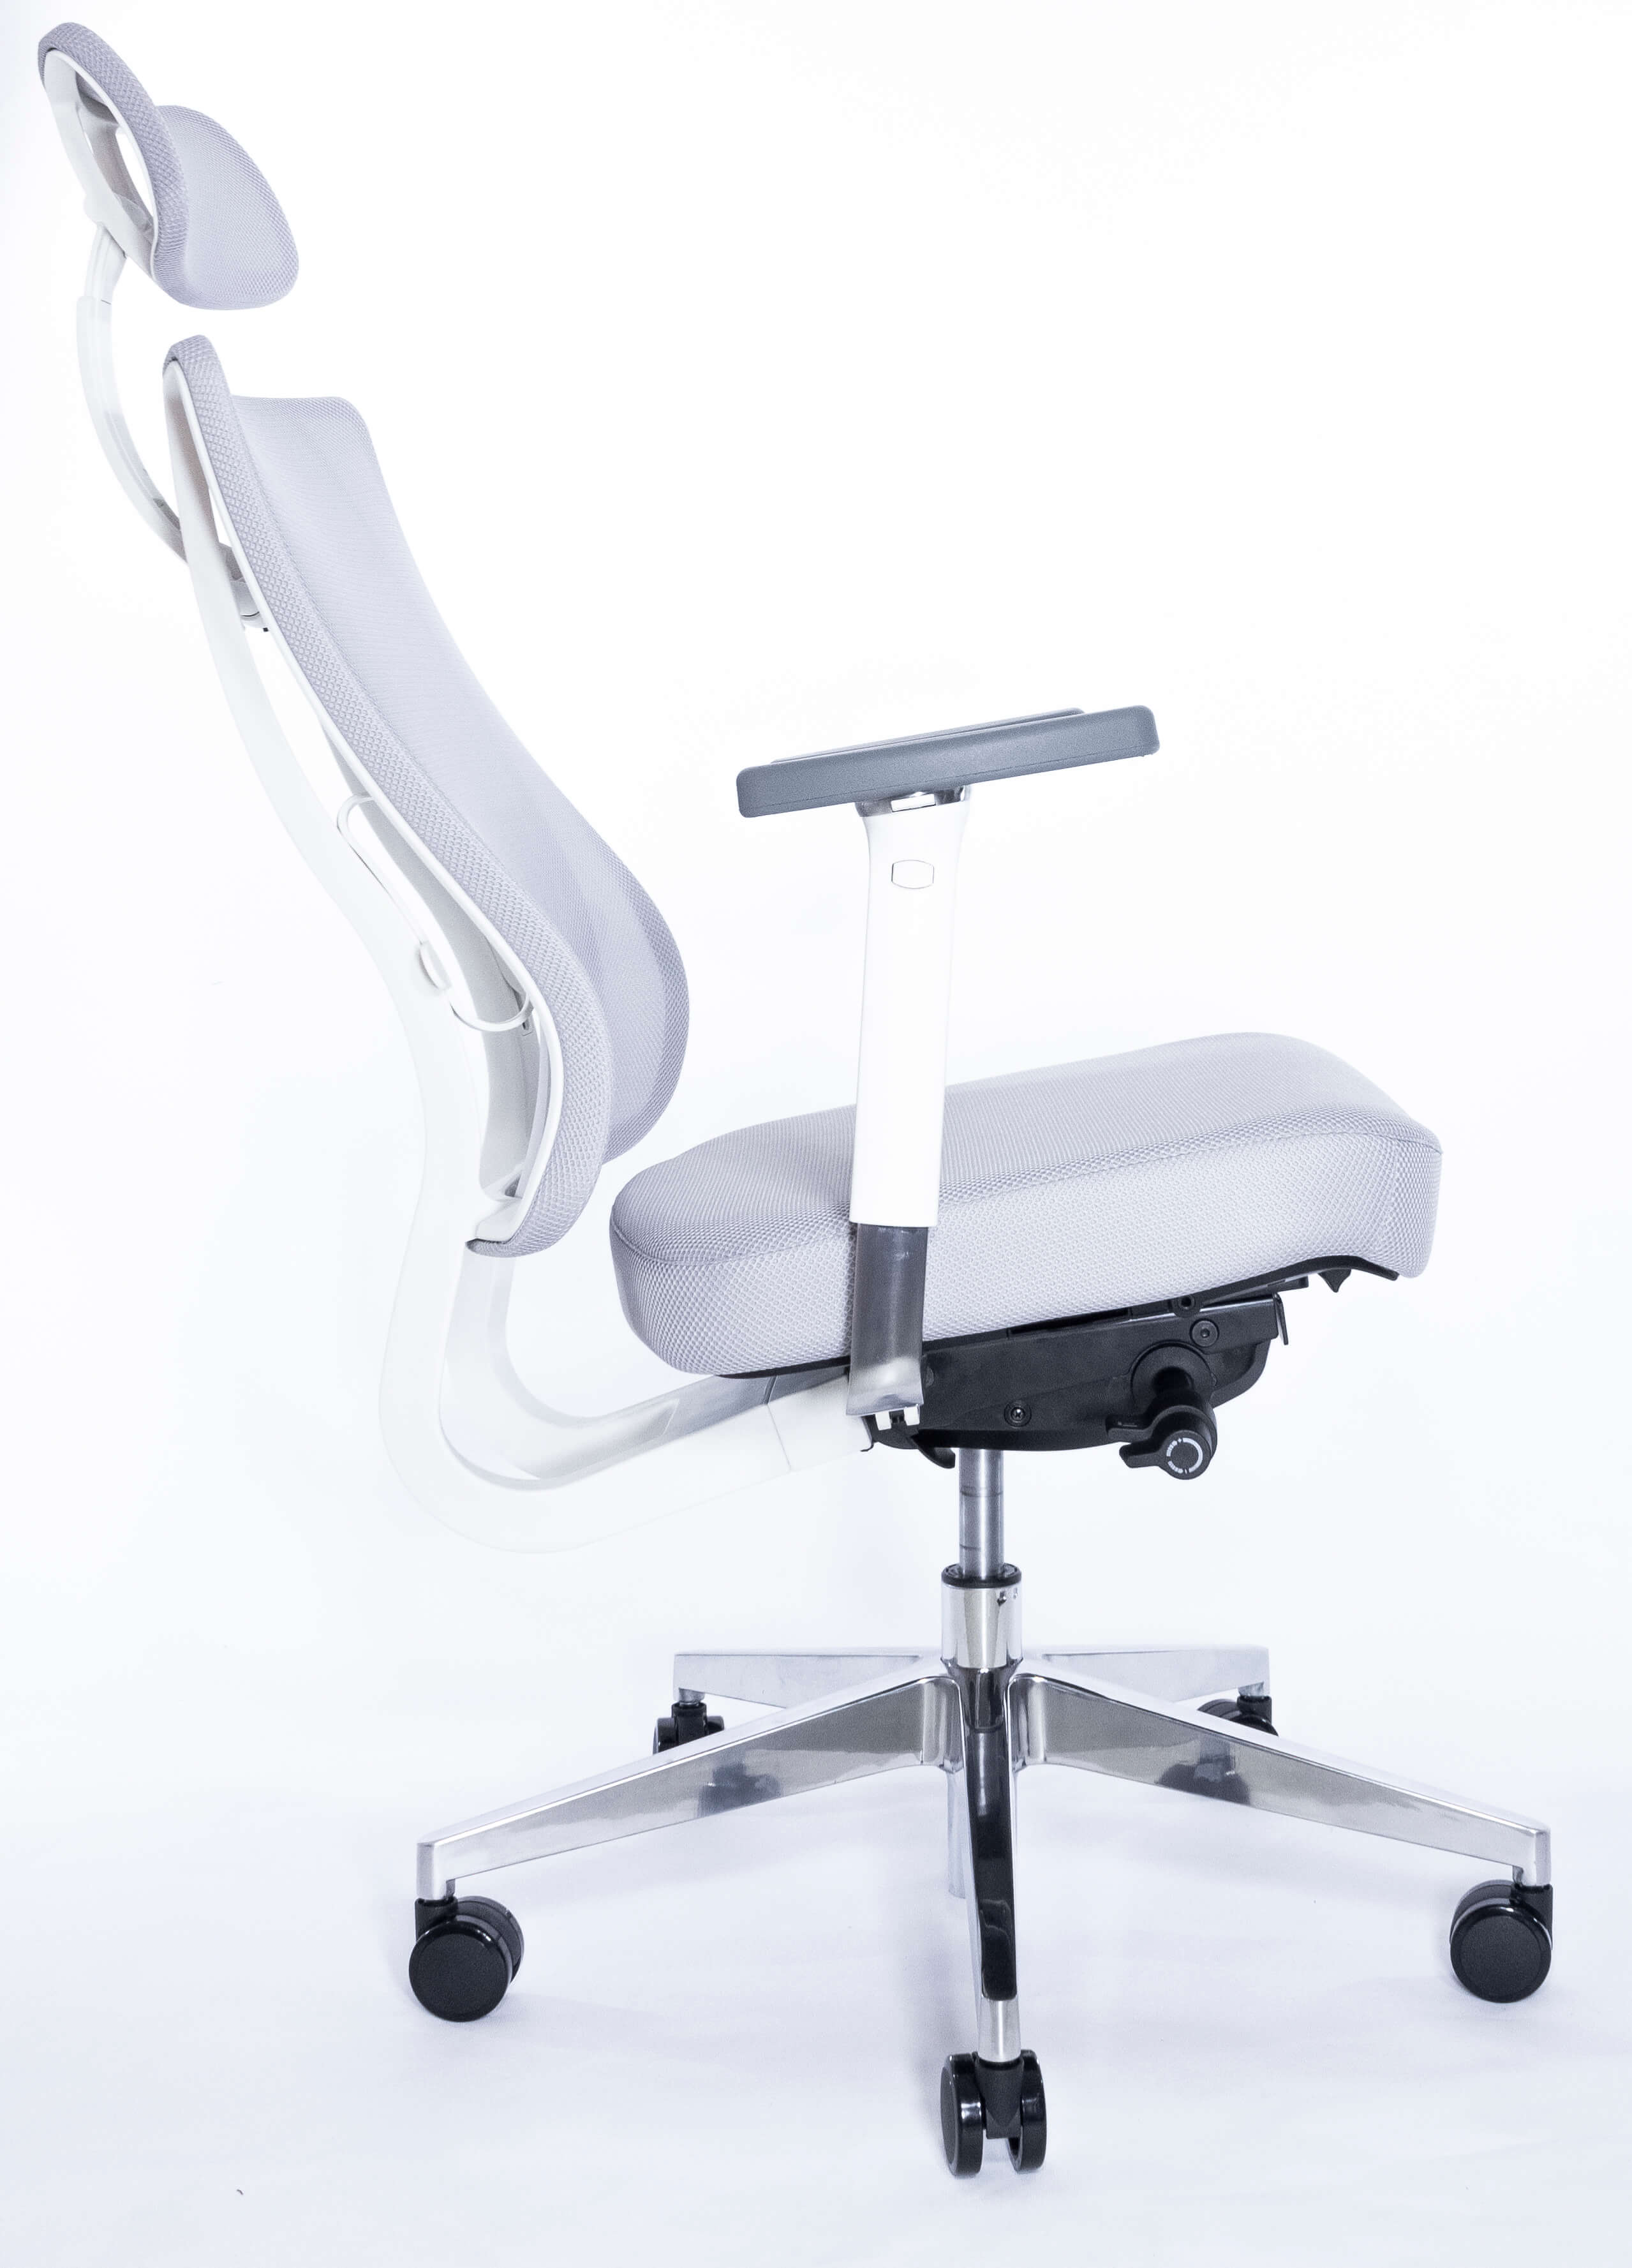 Эргономичное кресло Falto X-TRANS XTR 11WAL-AL (каркас белый, спинка серая, сиденье серое)